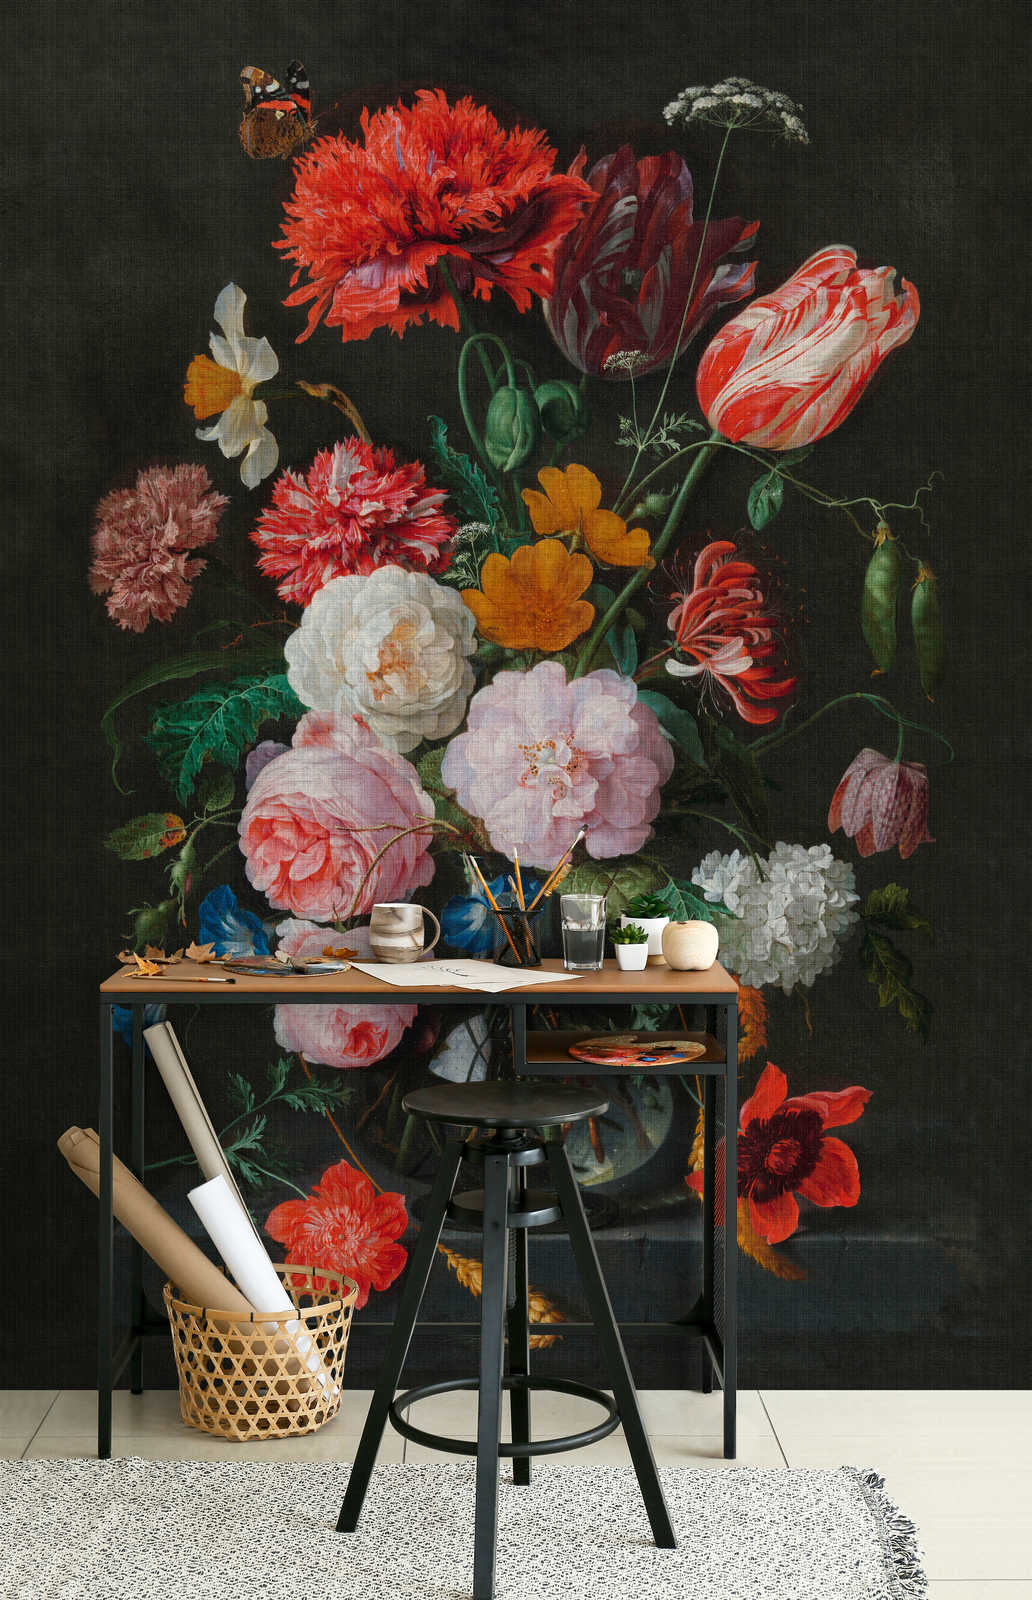             Artists Studio 4 - Papier peint Fleurs Nature morte aux roses
        